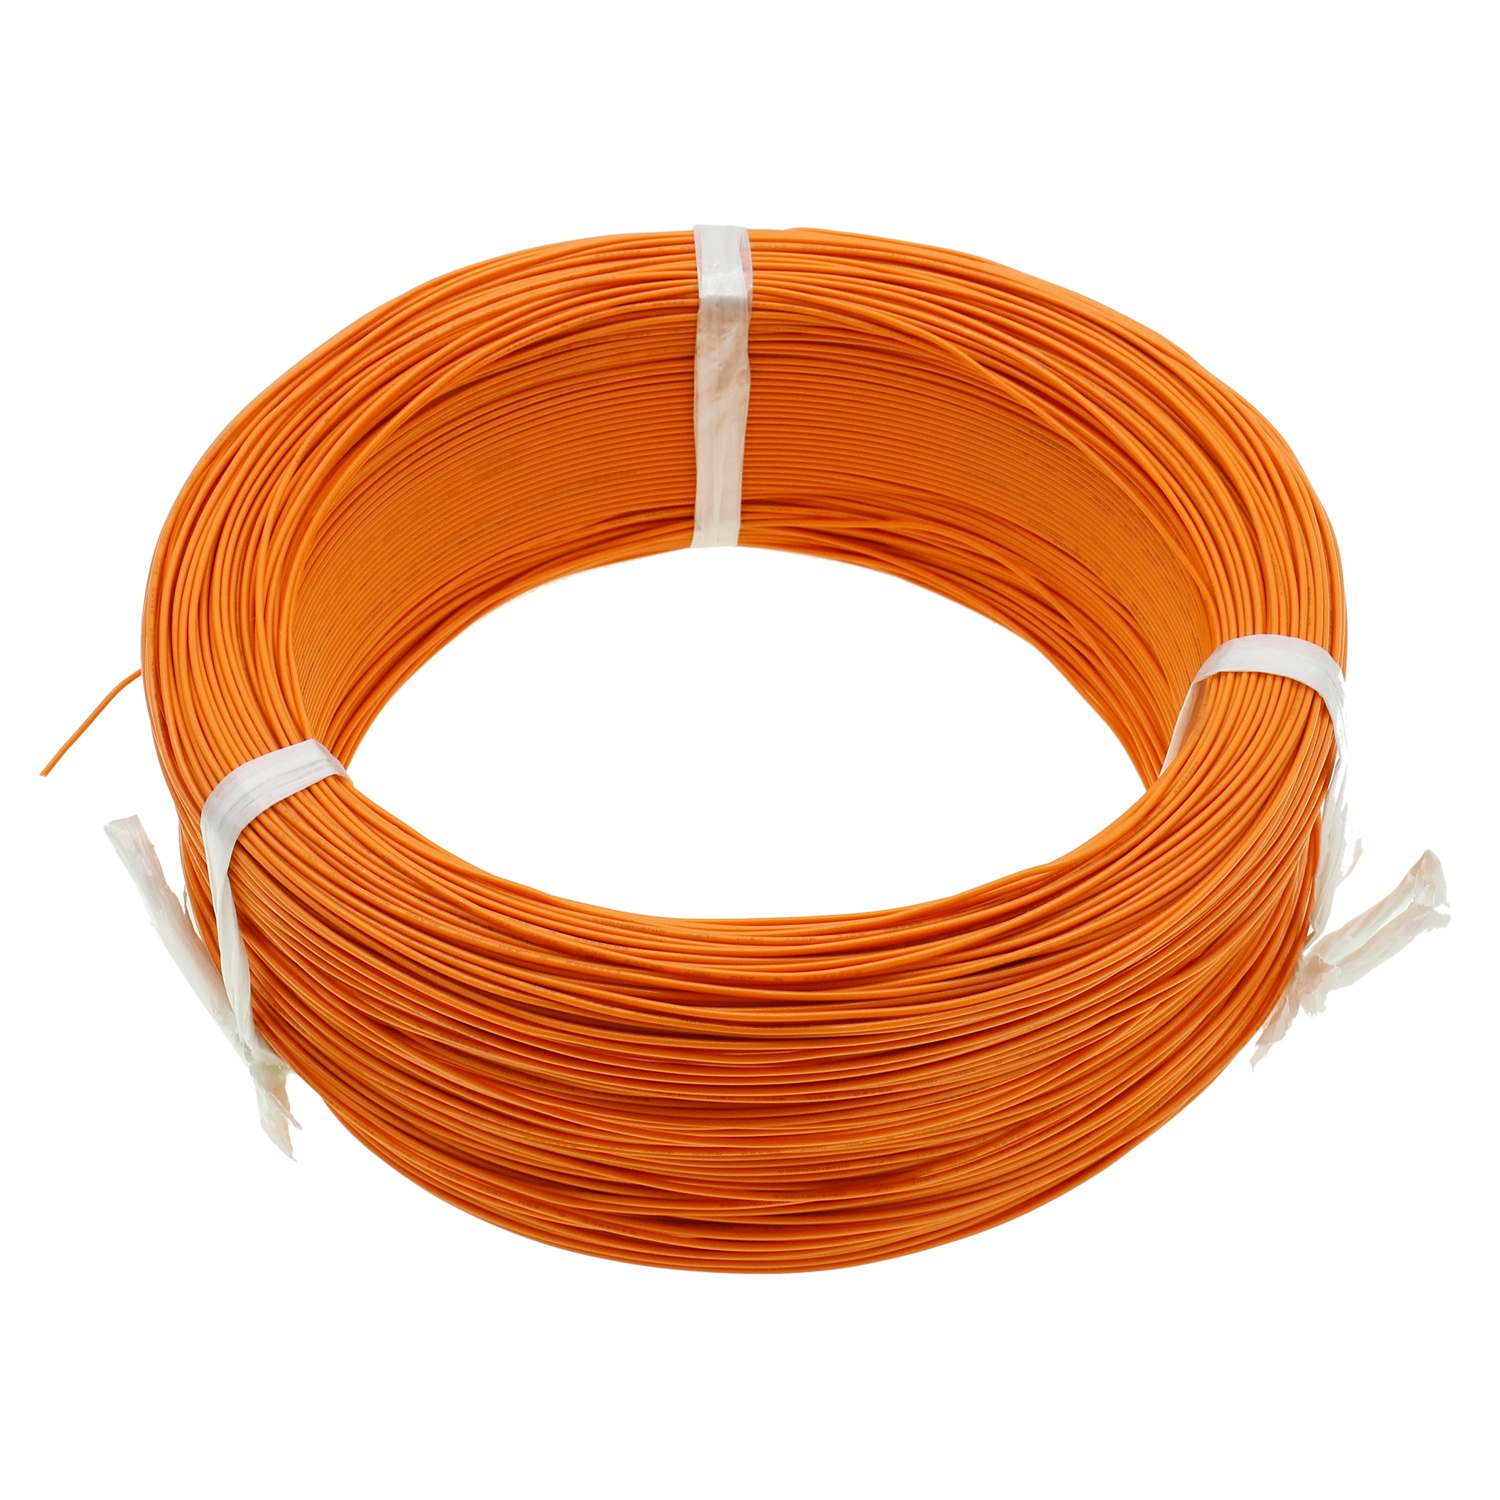 Cable de PVC UL1571 de cobre para cable de extensión de circuito eléctrico